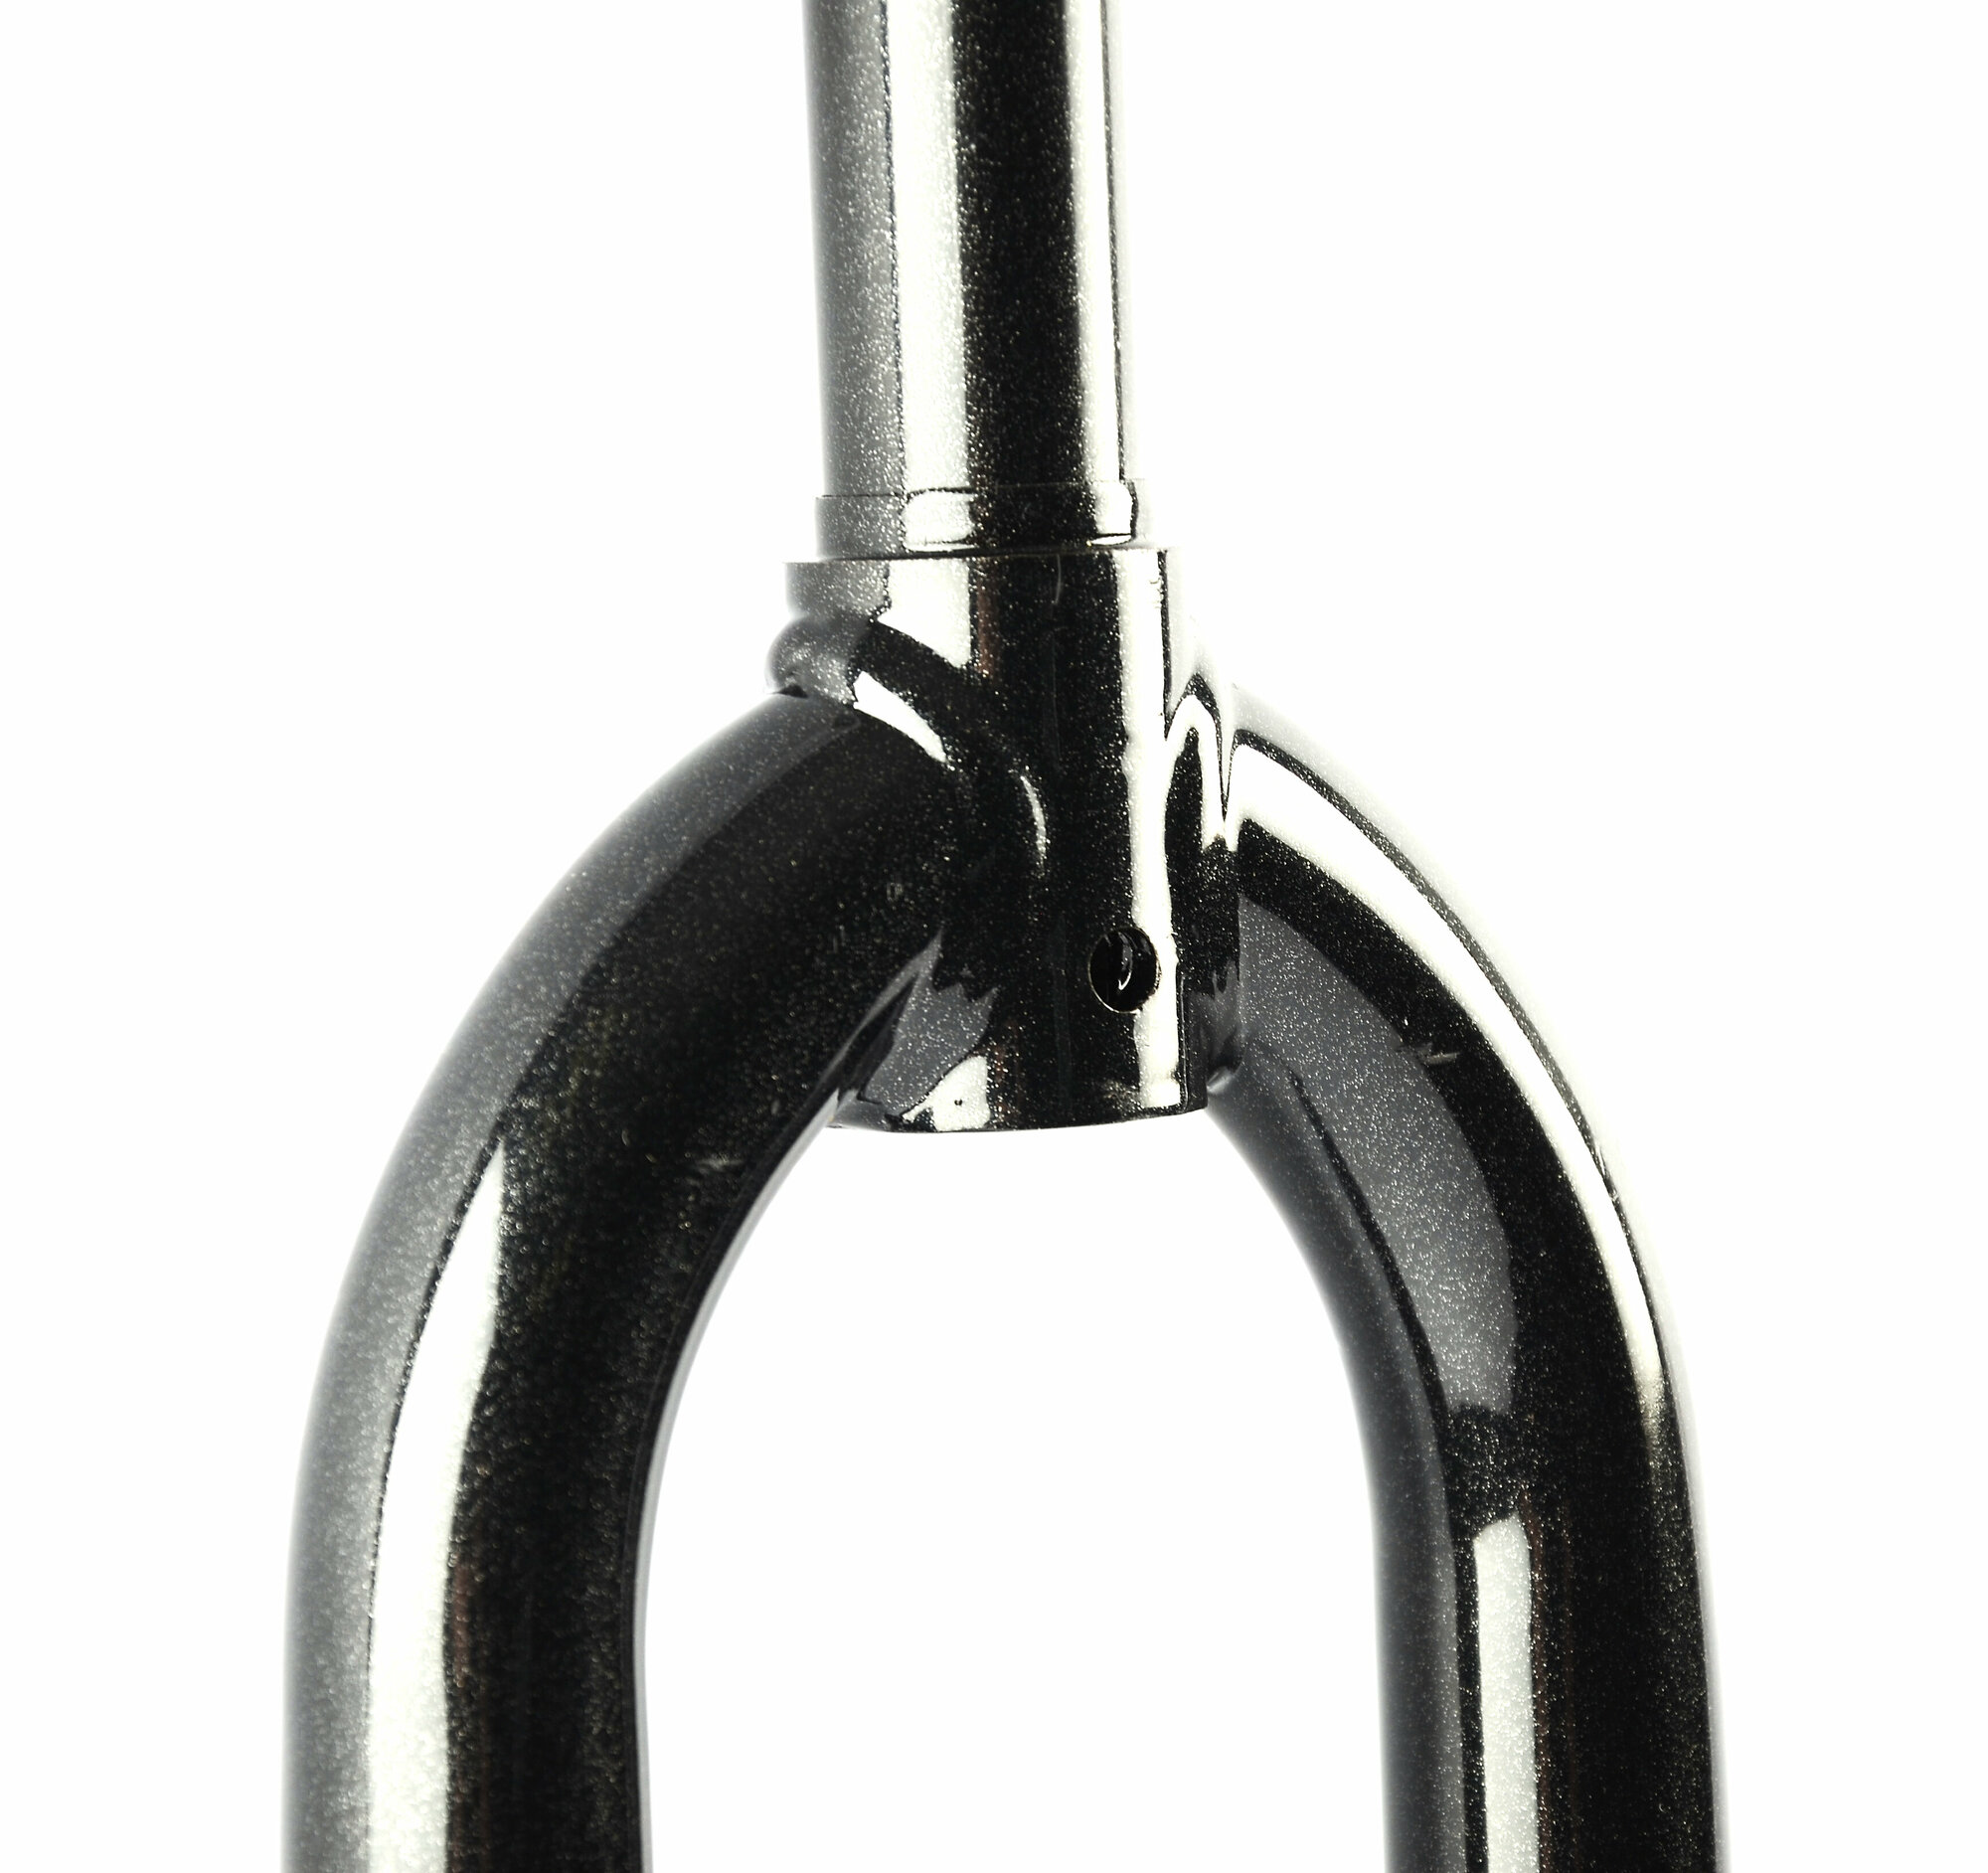 Вилка жесткая ARISTO 24", на 1" (25.4мм) резьбовая, длина штока 164мм, под ось втулки 3/8", совместимая с тормозами U-BRAKE, черная